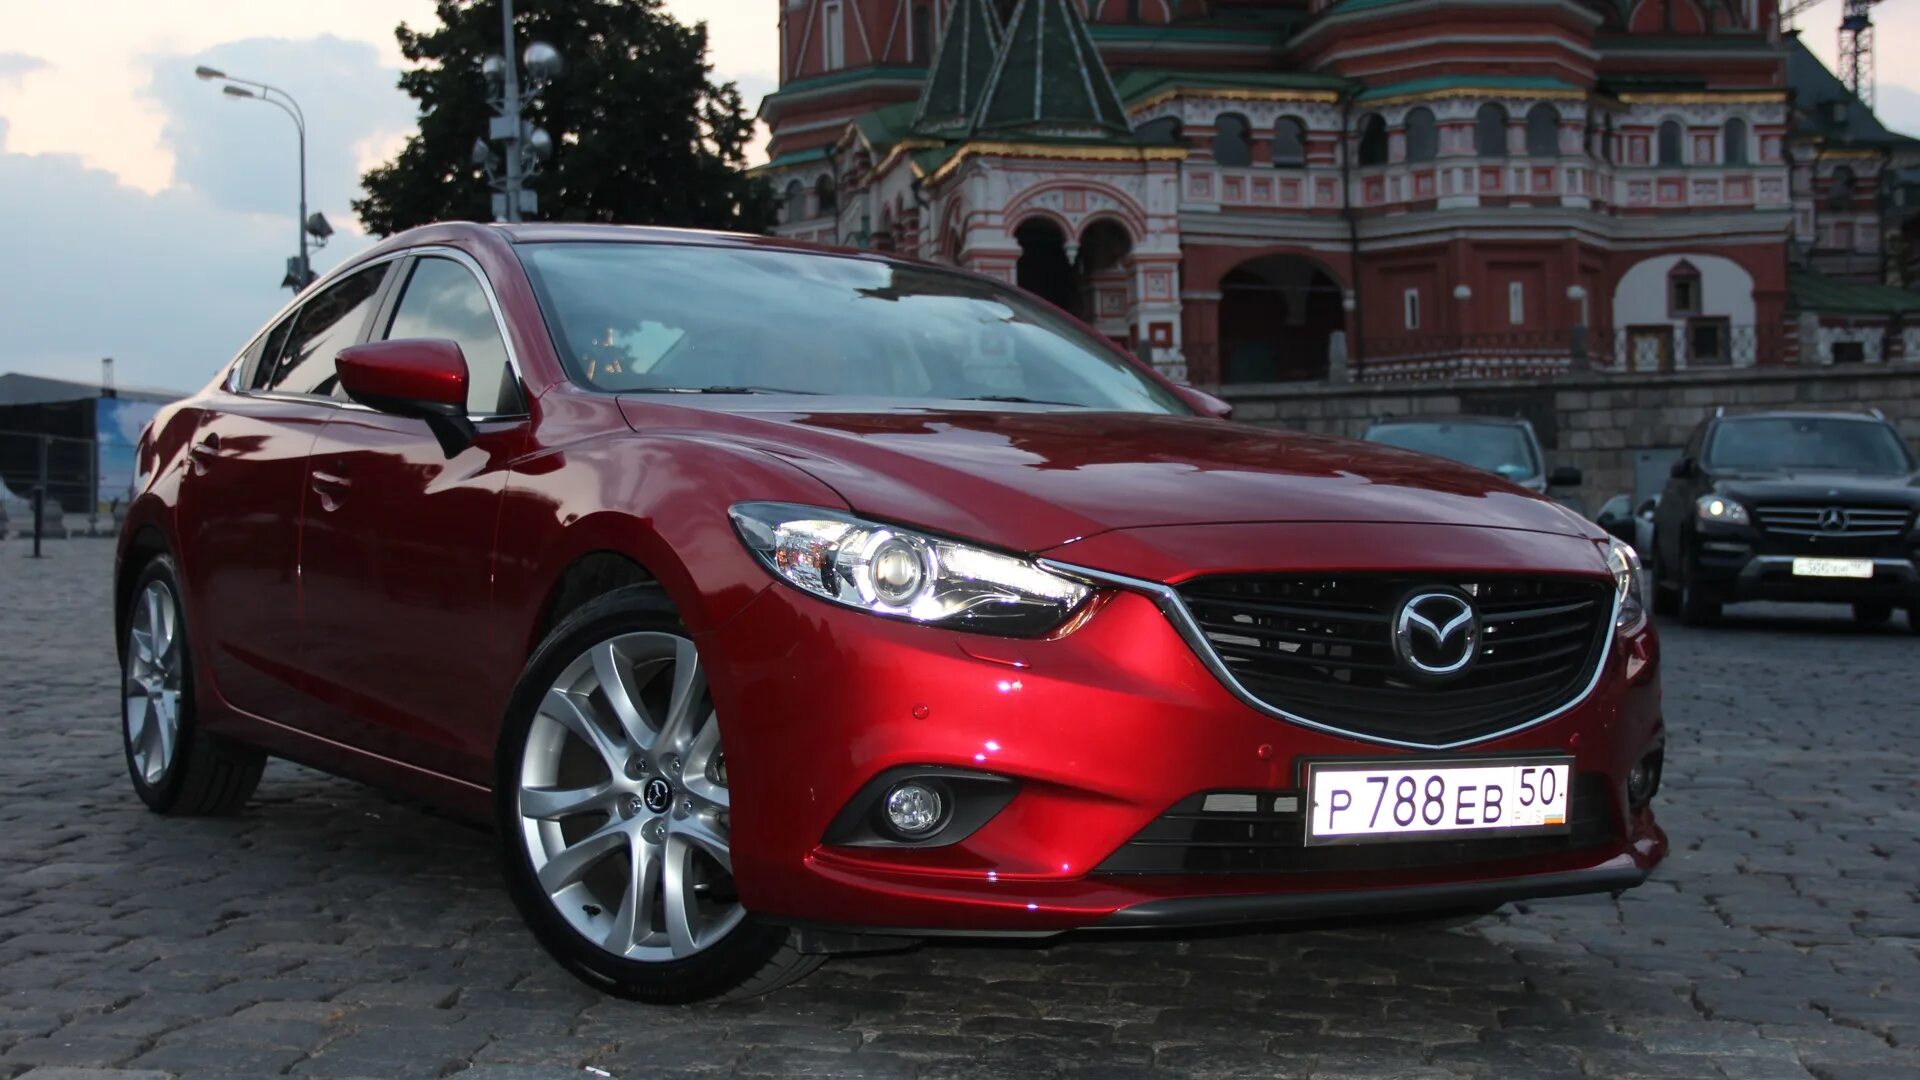 Mazda 6 Red. Мазда 6 красная. Мазда 6 алая. Мазда 6 красный металлик 2021. Купить мазда свердловская область